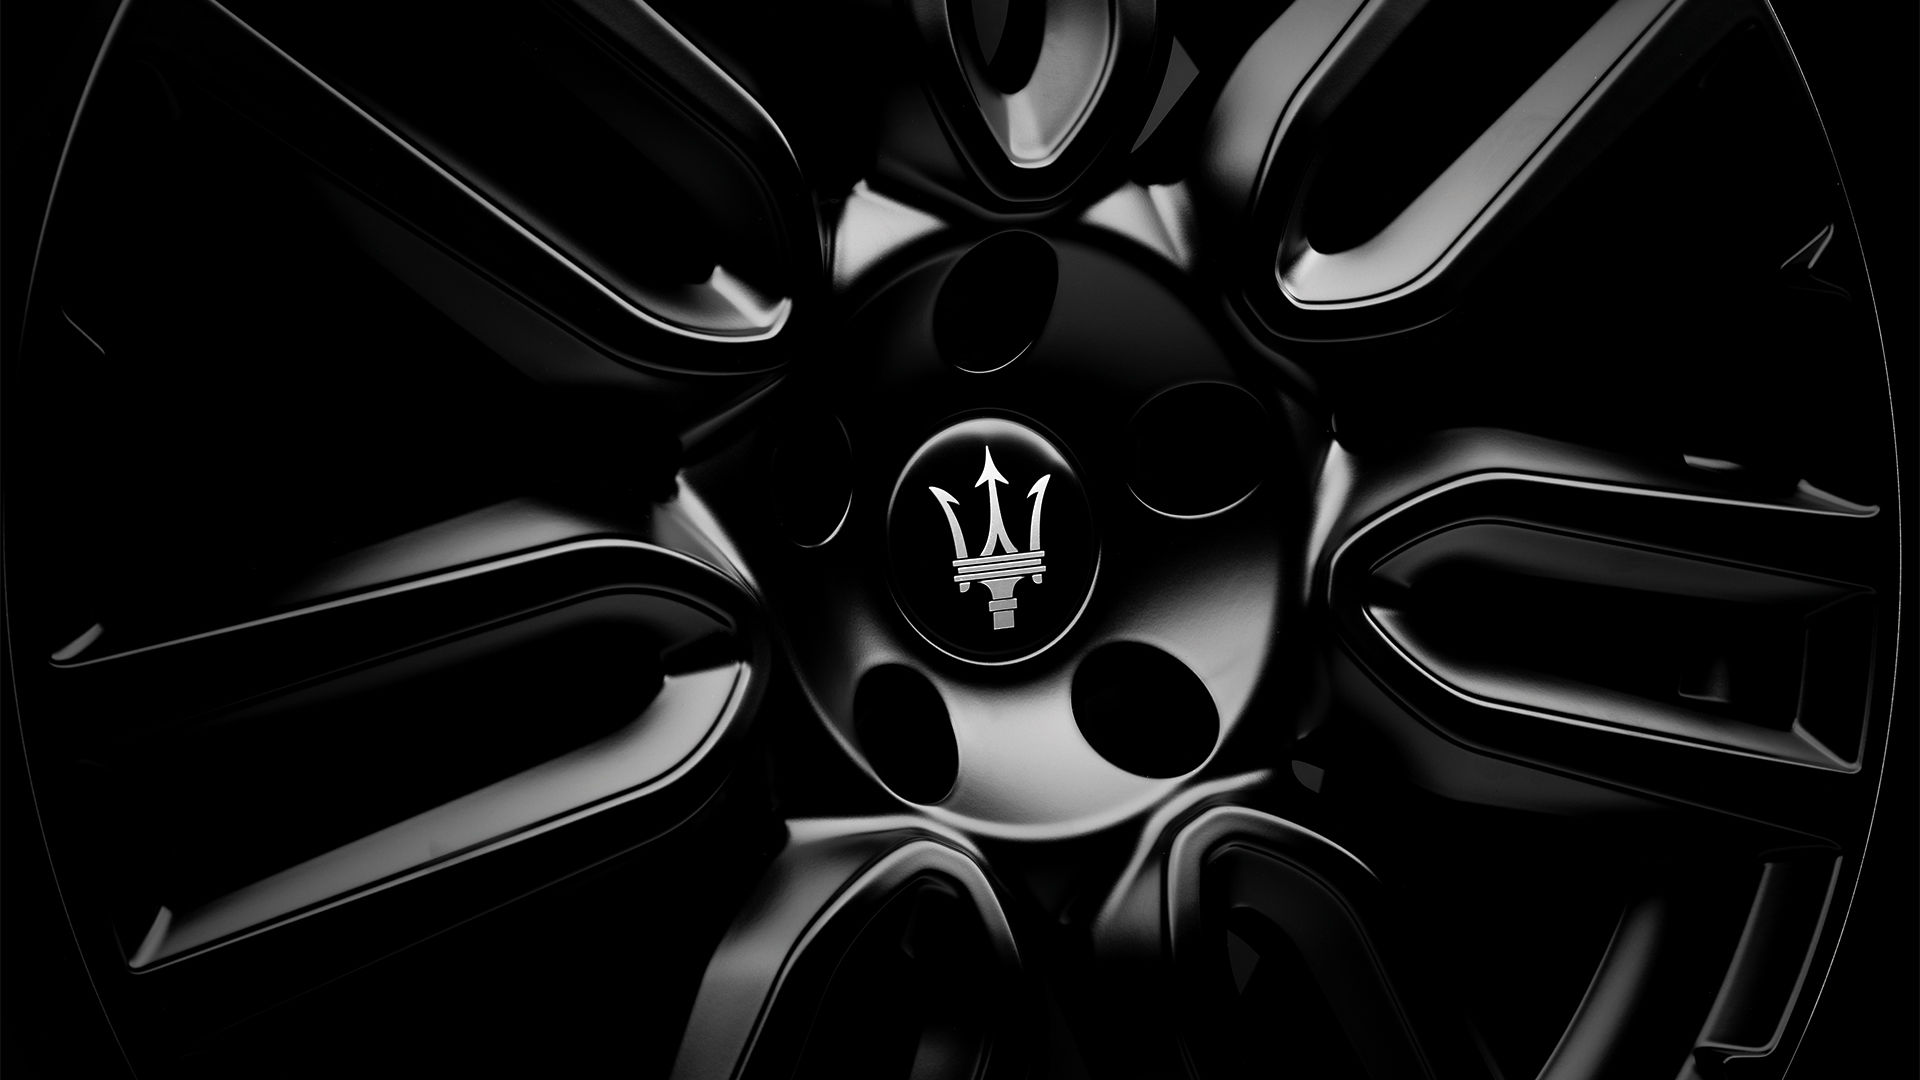 Rim of Maserati Quattroporte